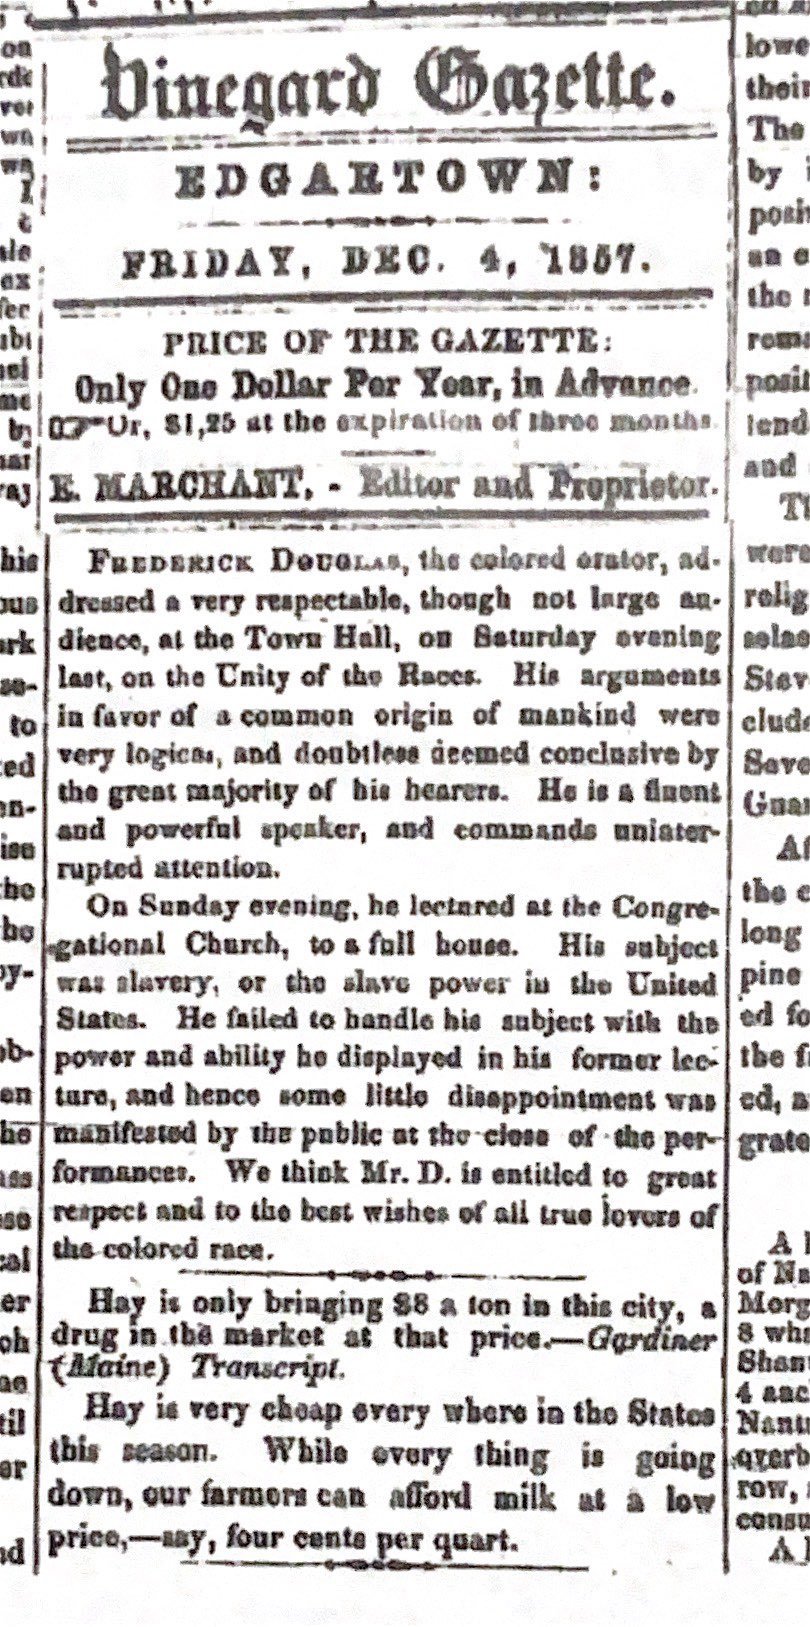 Vineyard Gazette, Dec. 4, 1857.jpg